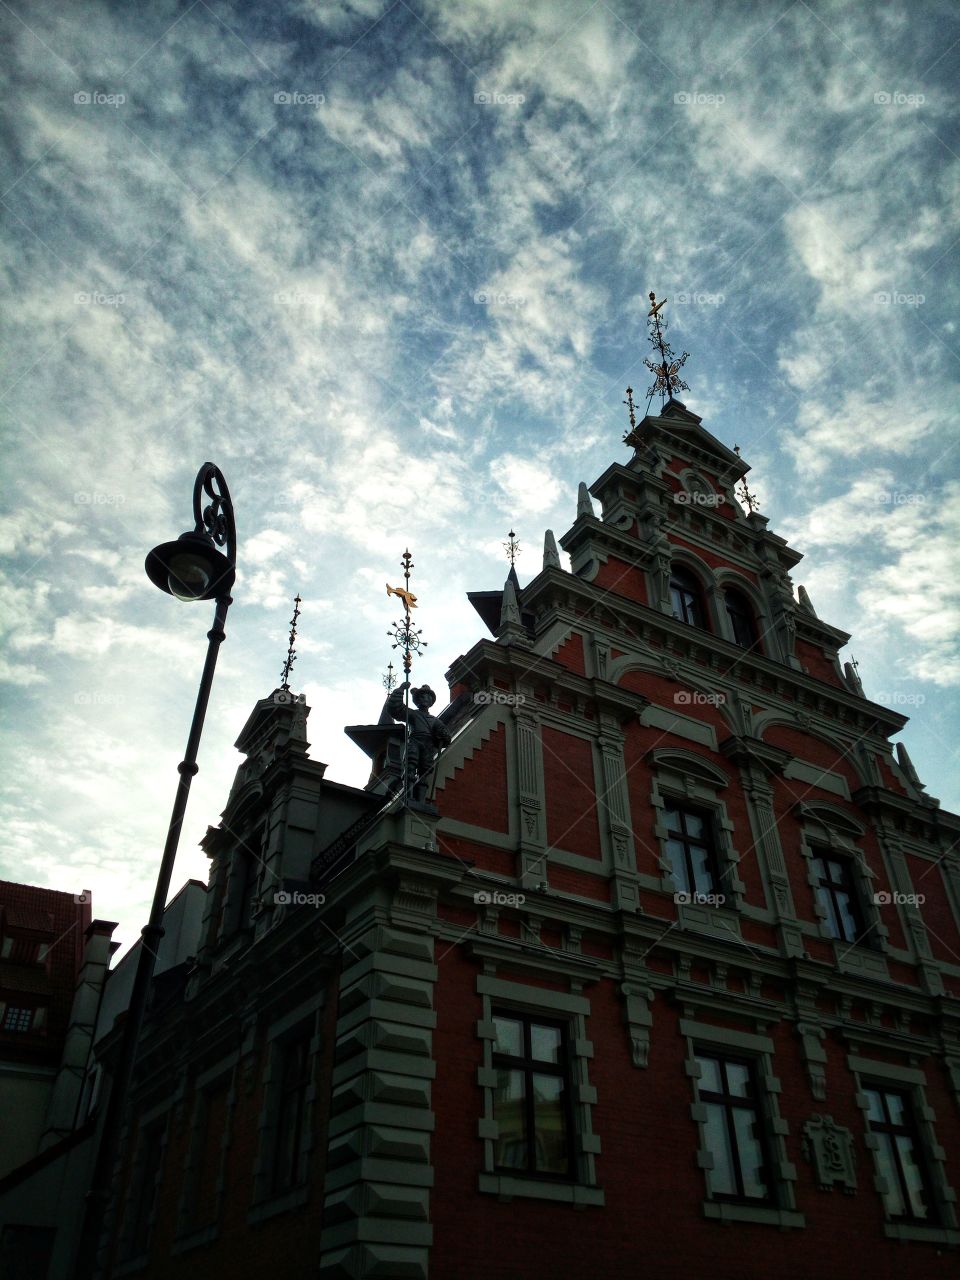 House of Blackhead's, Riga, Latvia